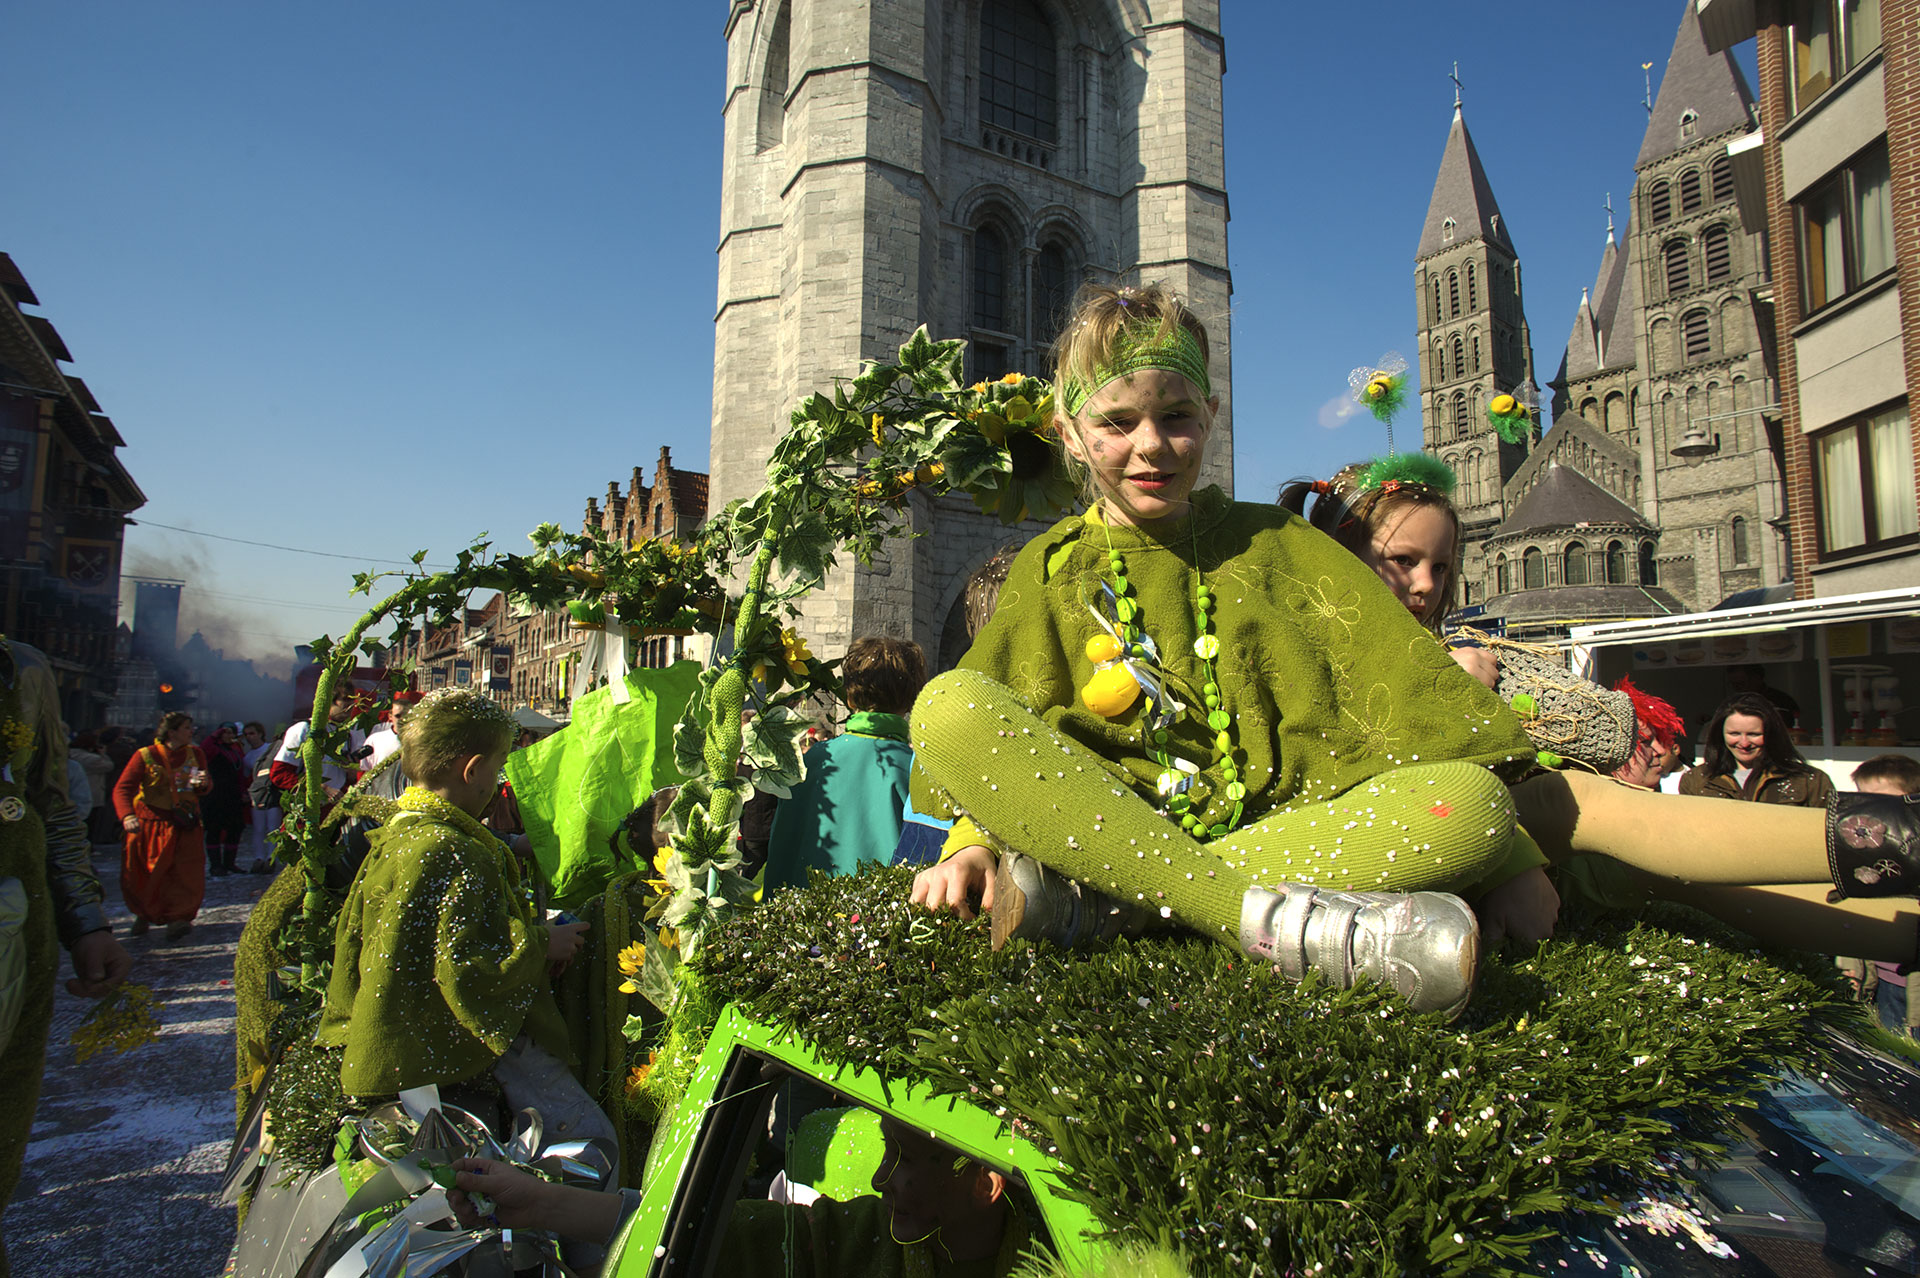 Fillette sur un char du Carnaval de Tournai